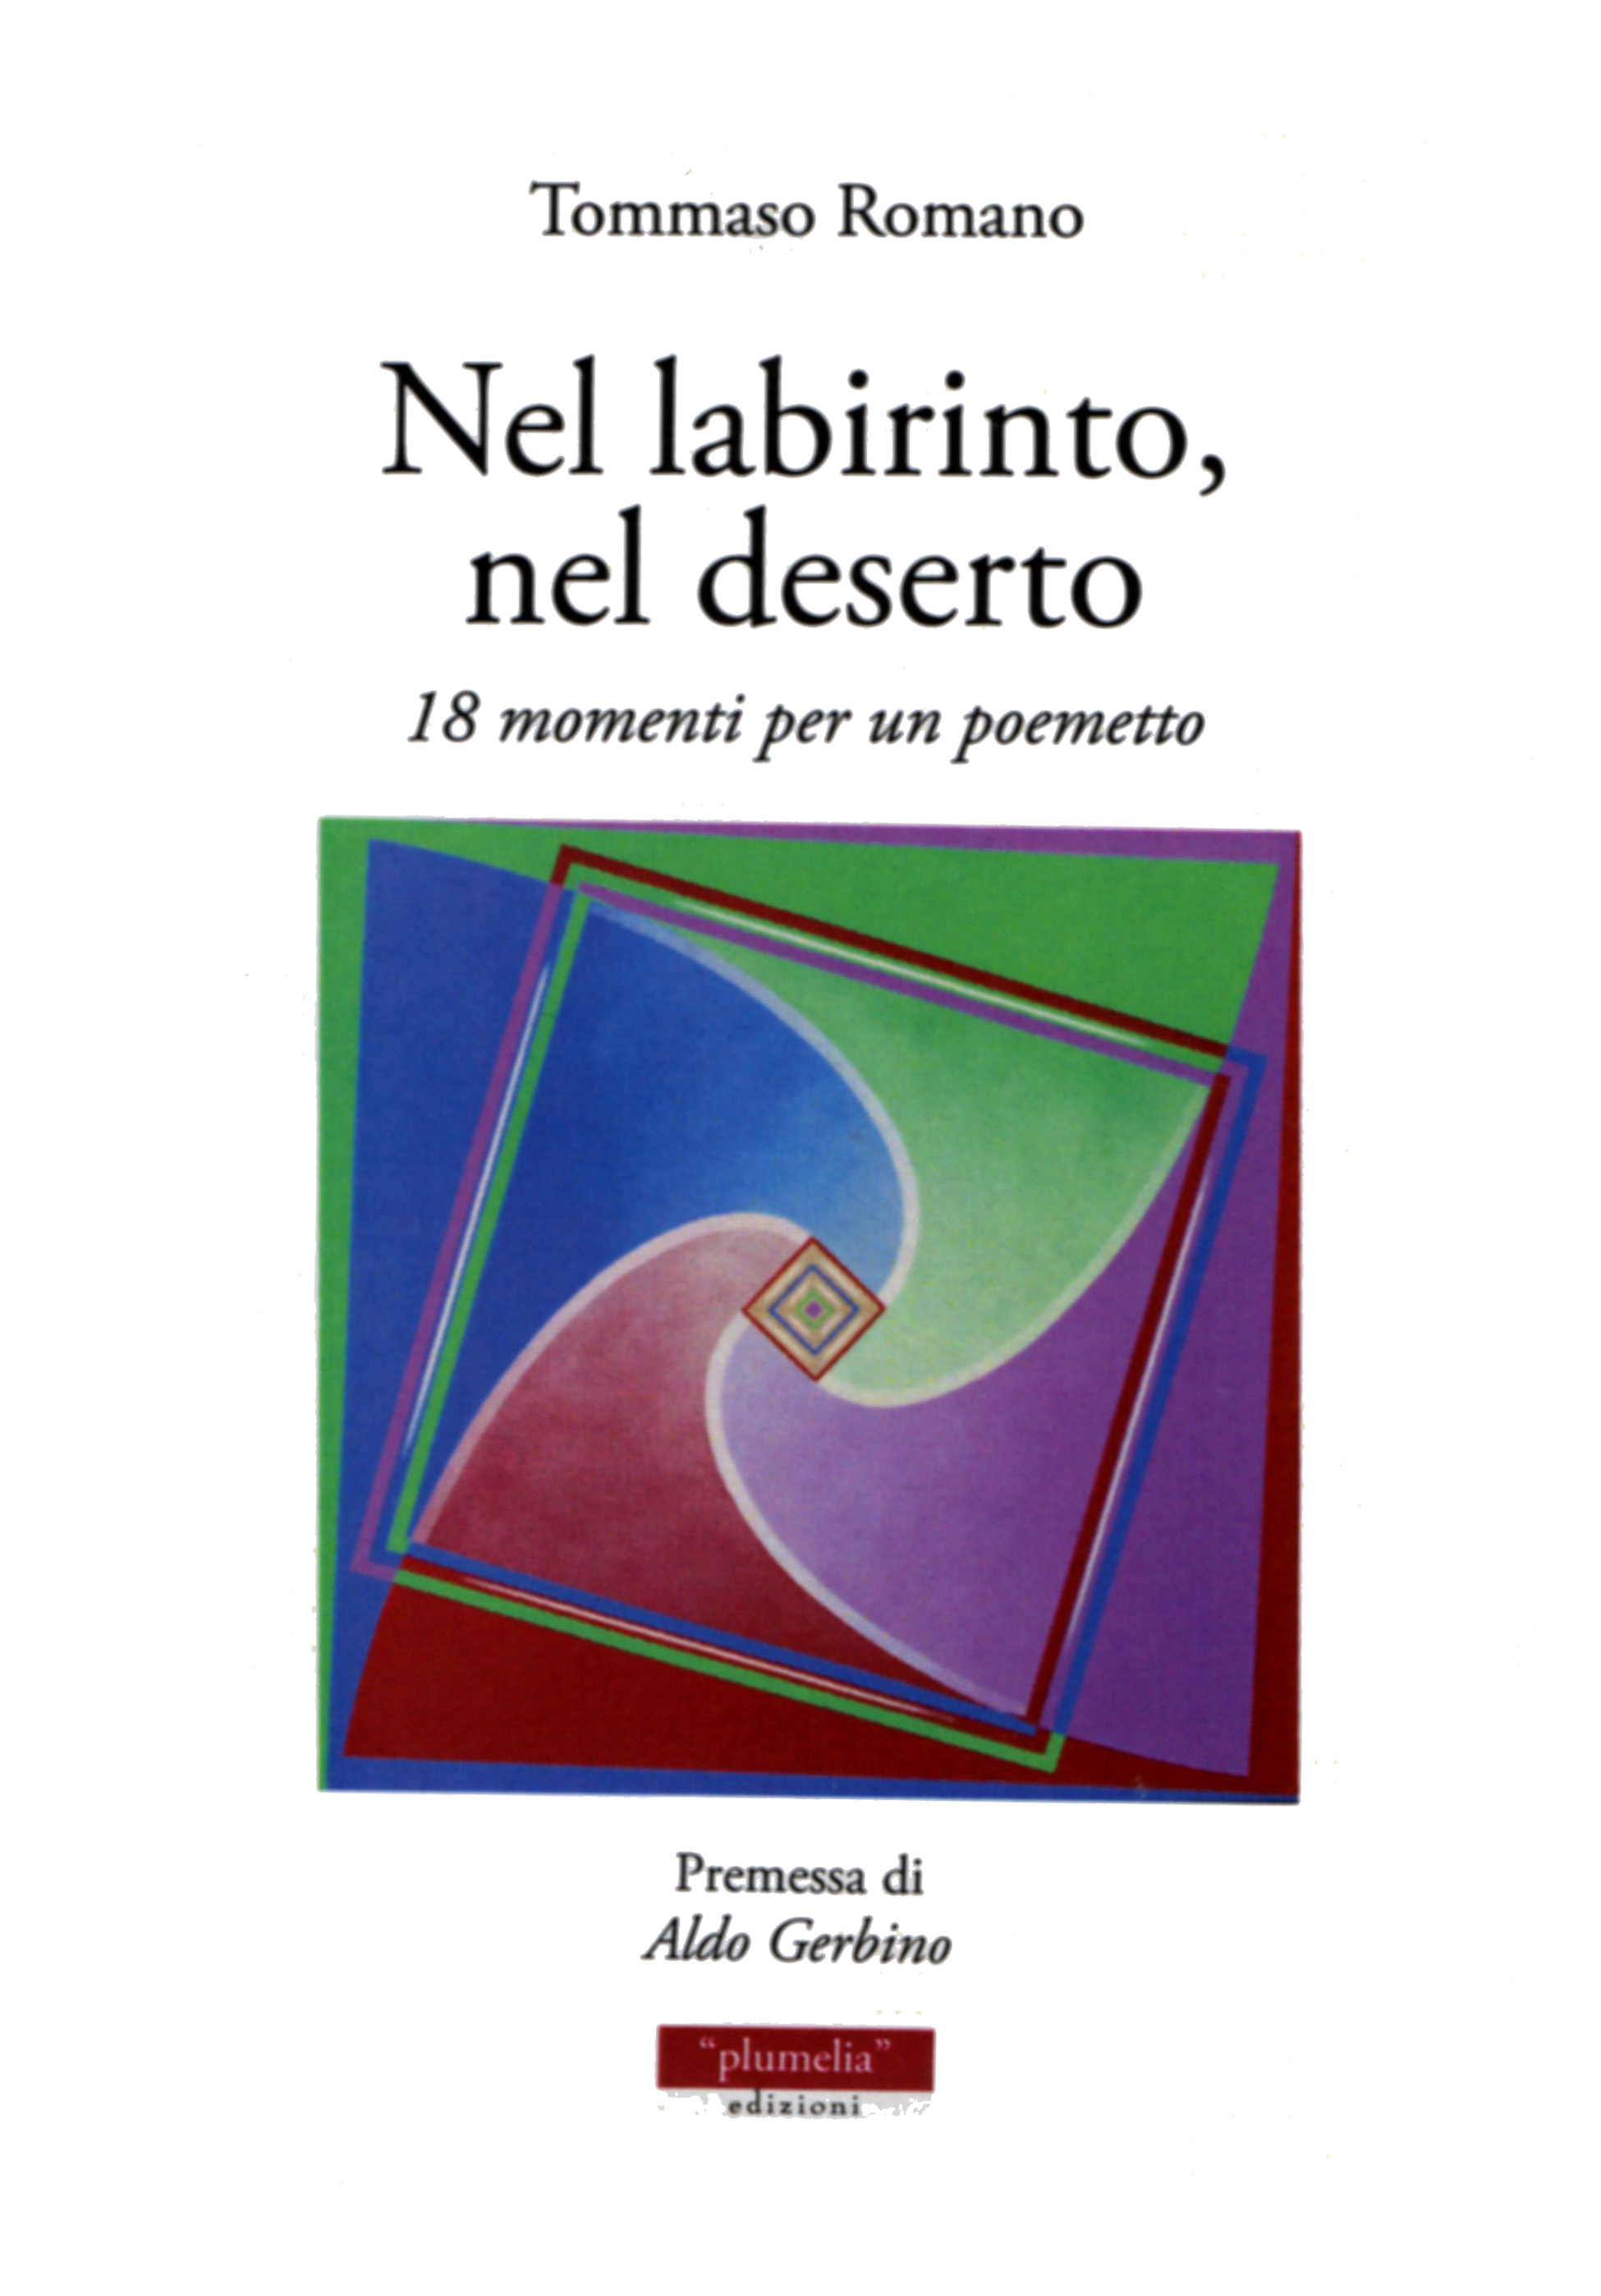 Giovanni Teresi recensisce "Nel labirinto, nel deserto" di Tommaso Romano (Ed. Plumelia)